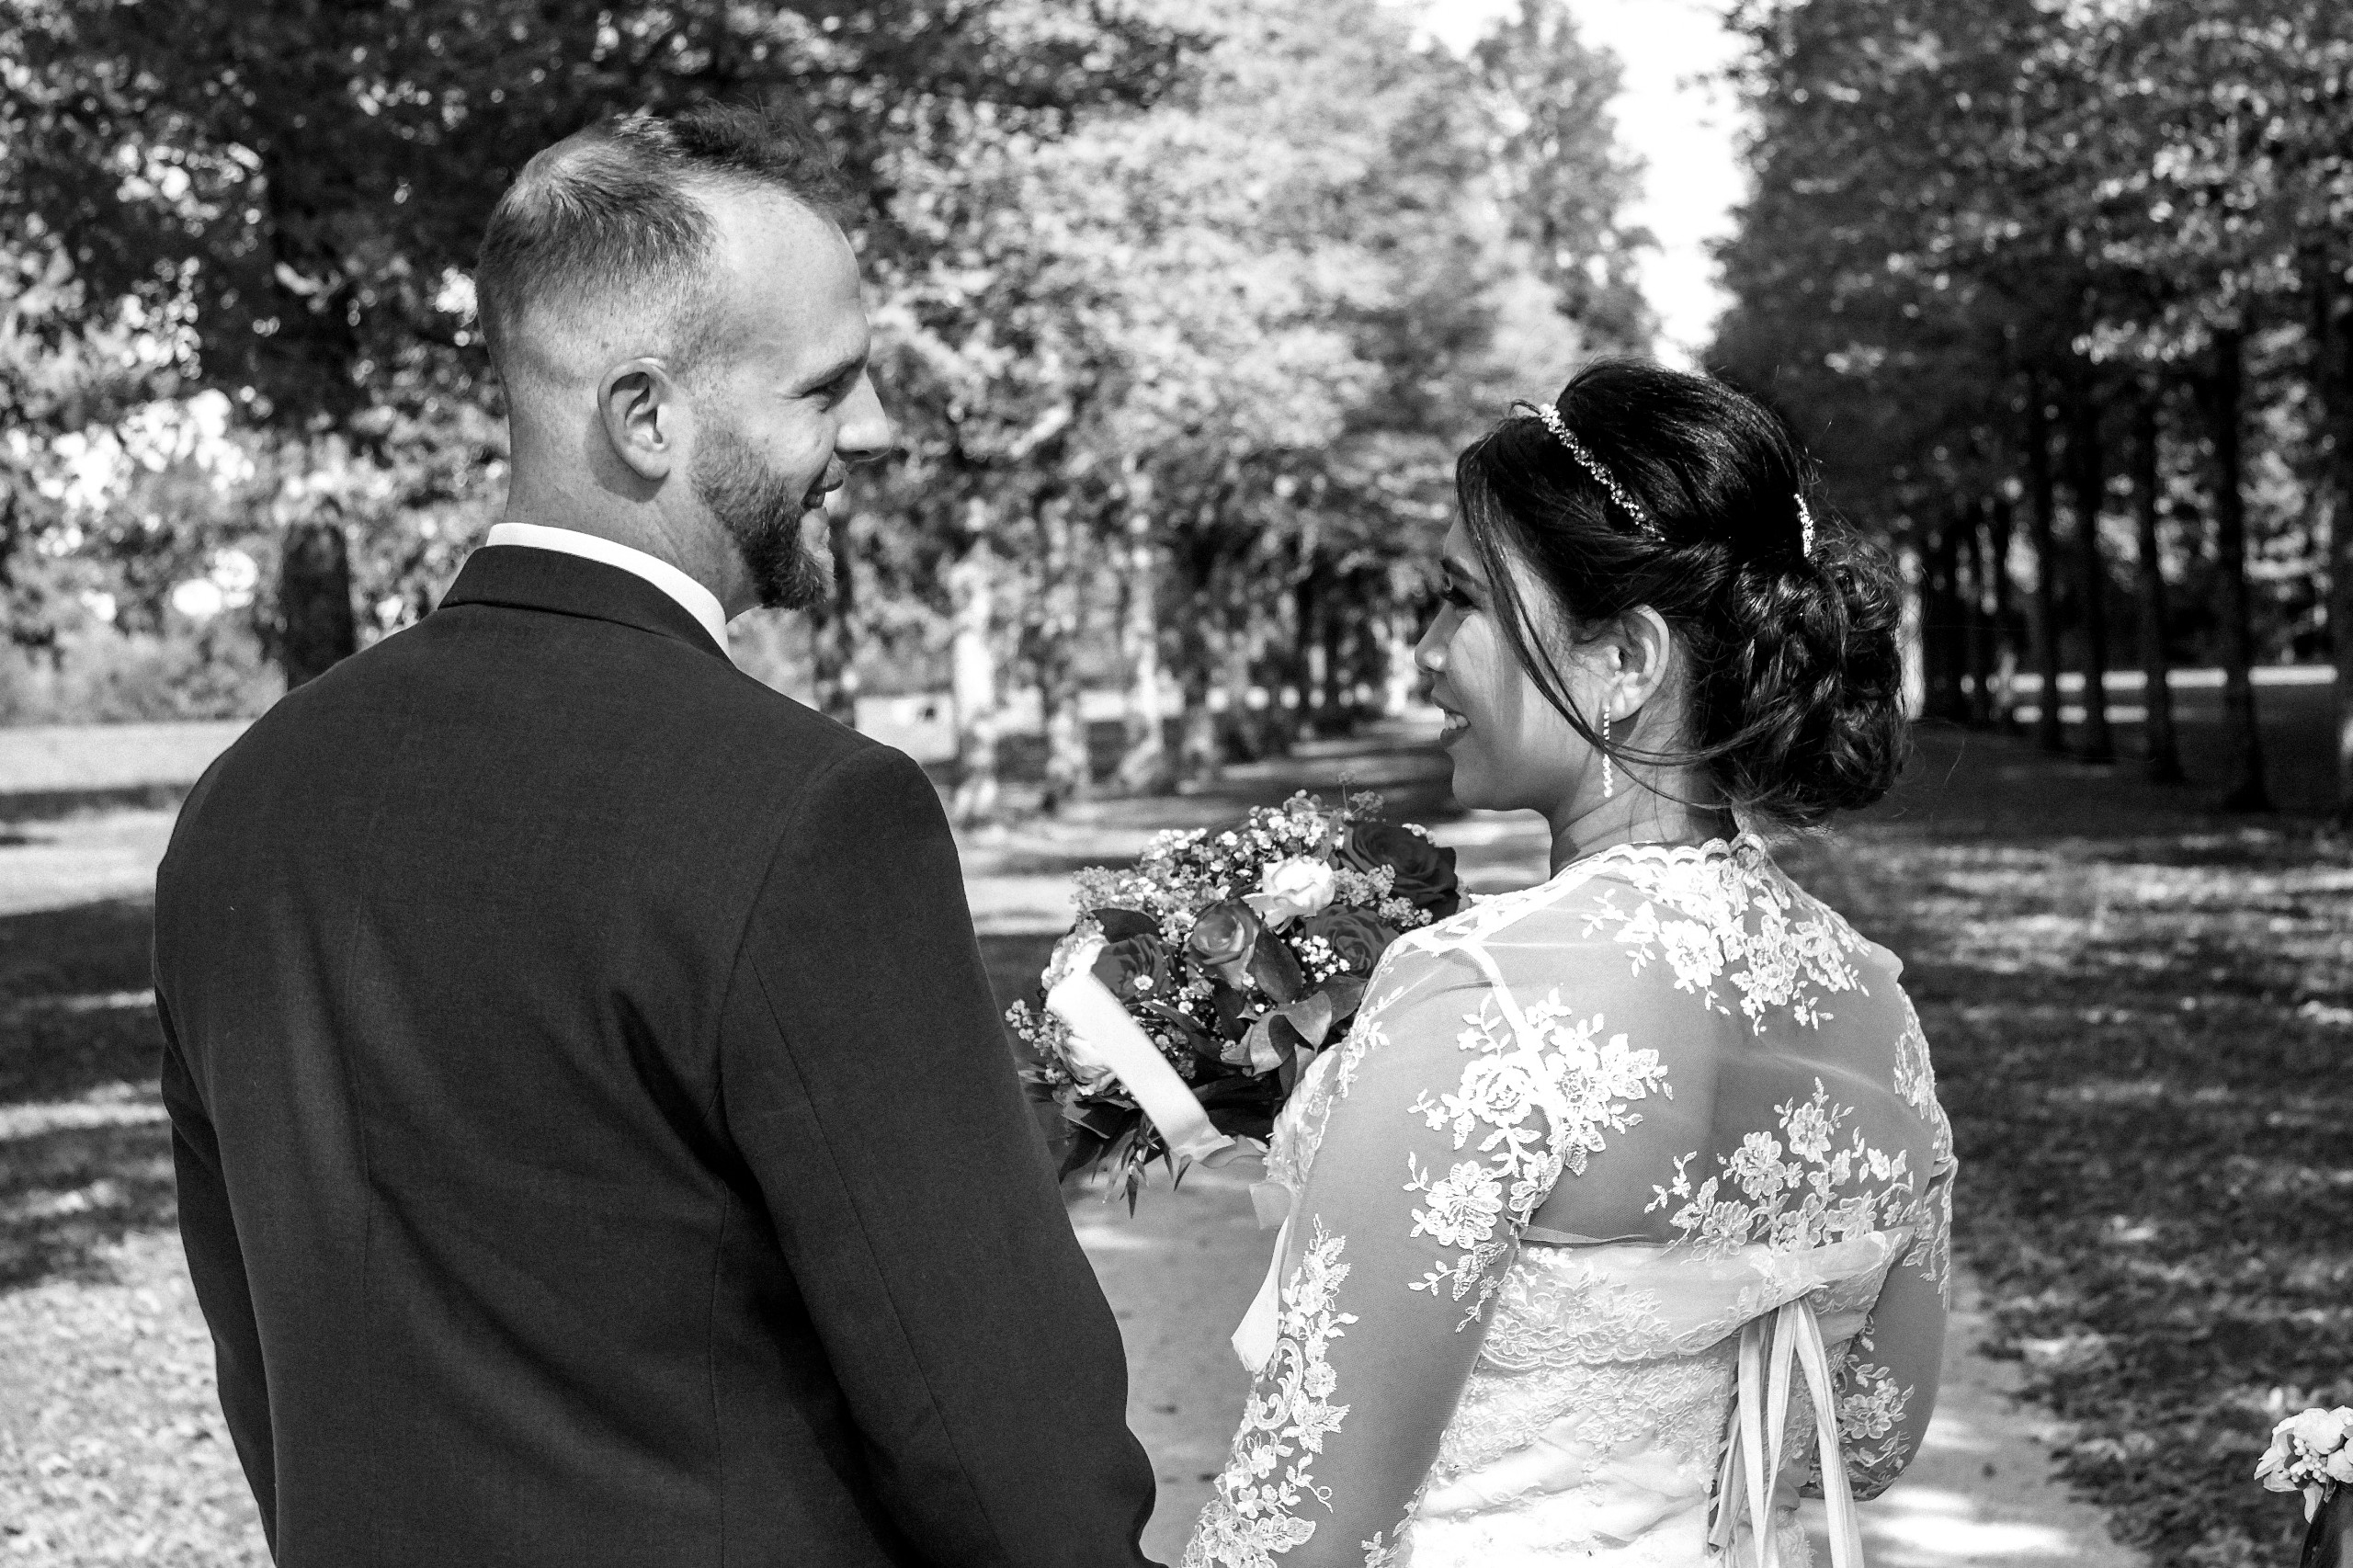 Hochzeitsfotograf im Gro&szlig;raum Frankfurt. Ich schaffe als Fotograf Ihrer Hochzeit emotionale, preiswerte Fotografie, bereits ab 280 &euro;